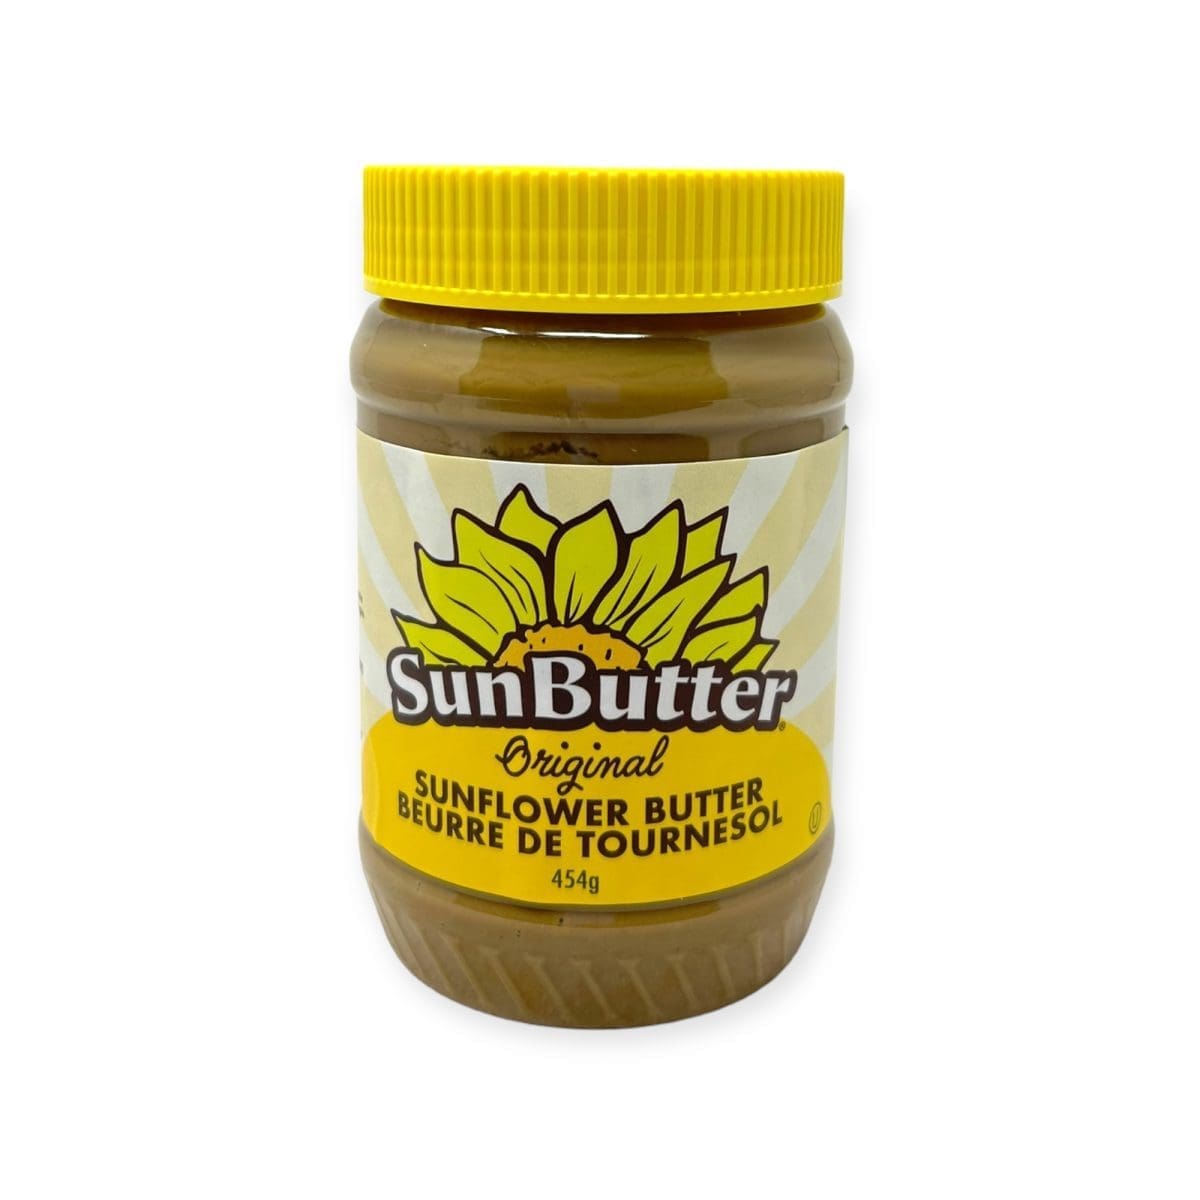 Sunbutter Sunflower Butter Original (454g)